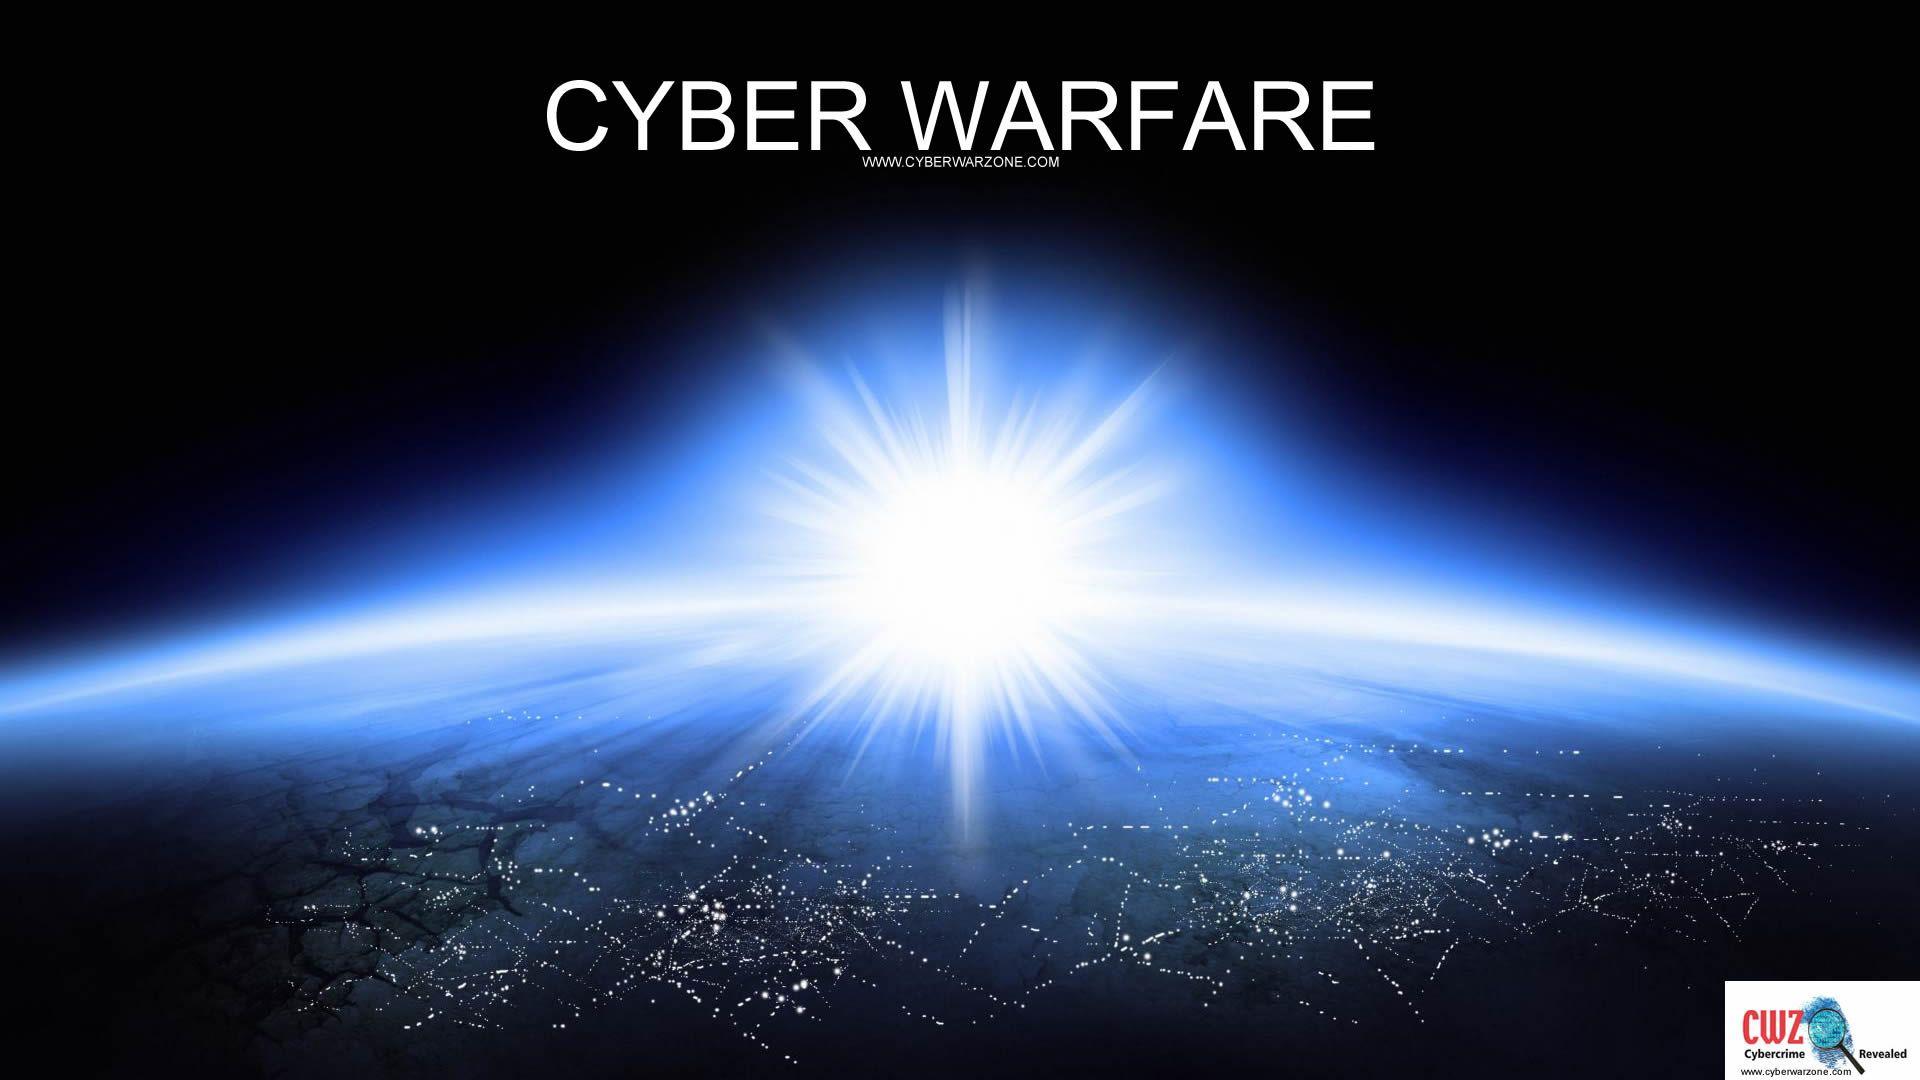 Cyber warfare wallpaper